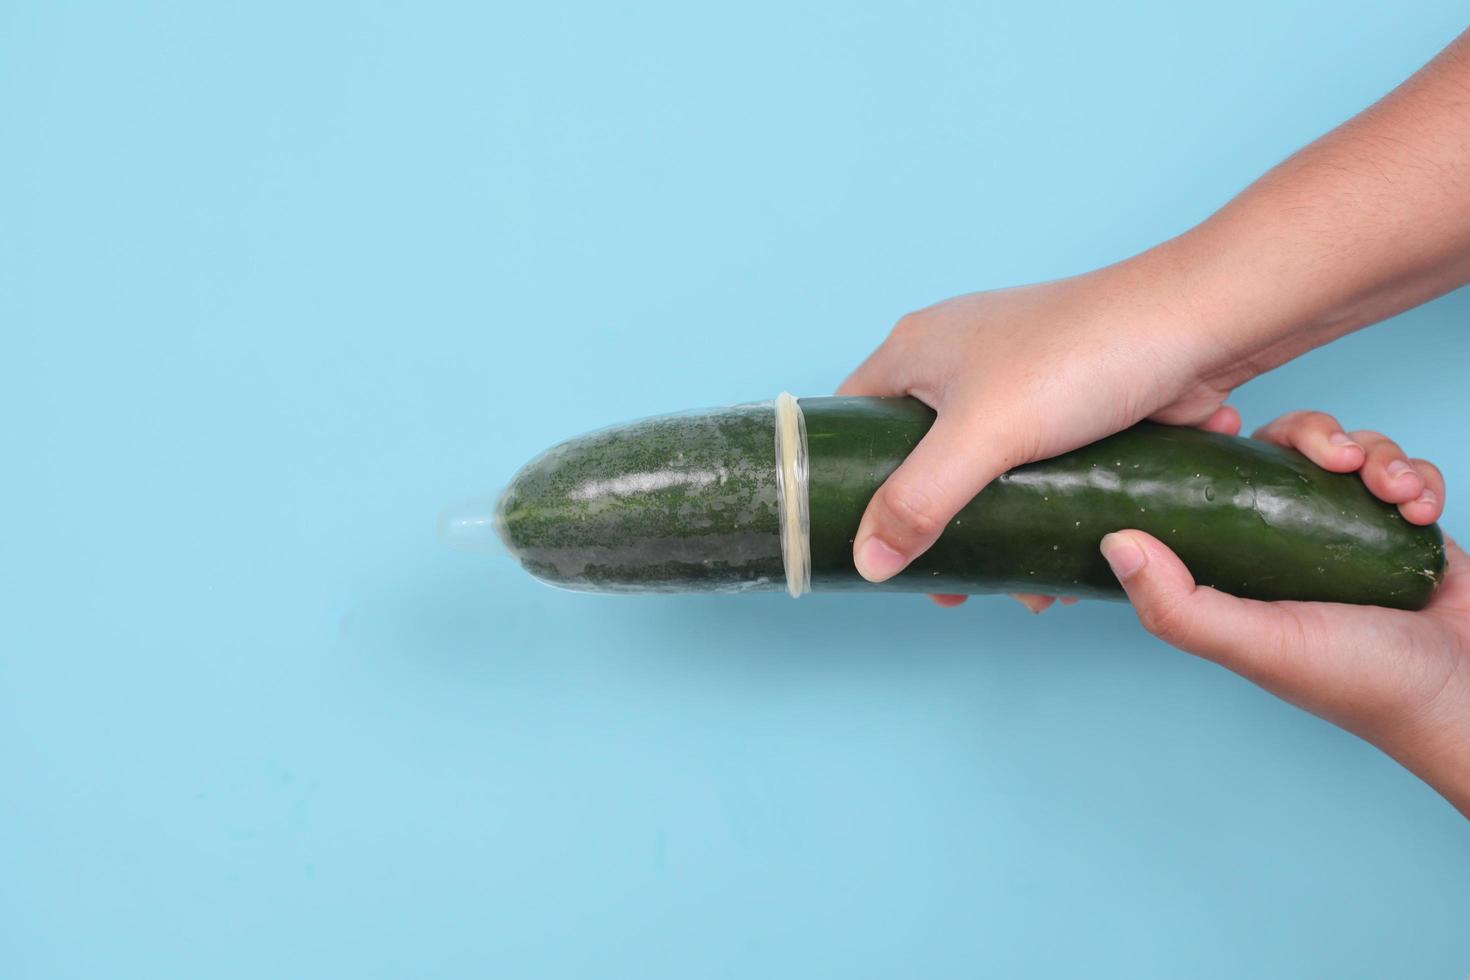 seksuele voorlichting met komkommer en anticonceptie geïsoleerd op blauwe achtergrond foto